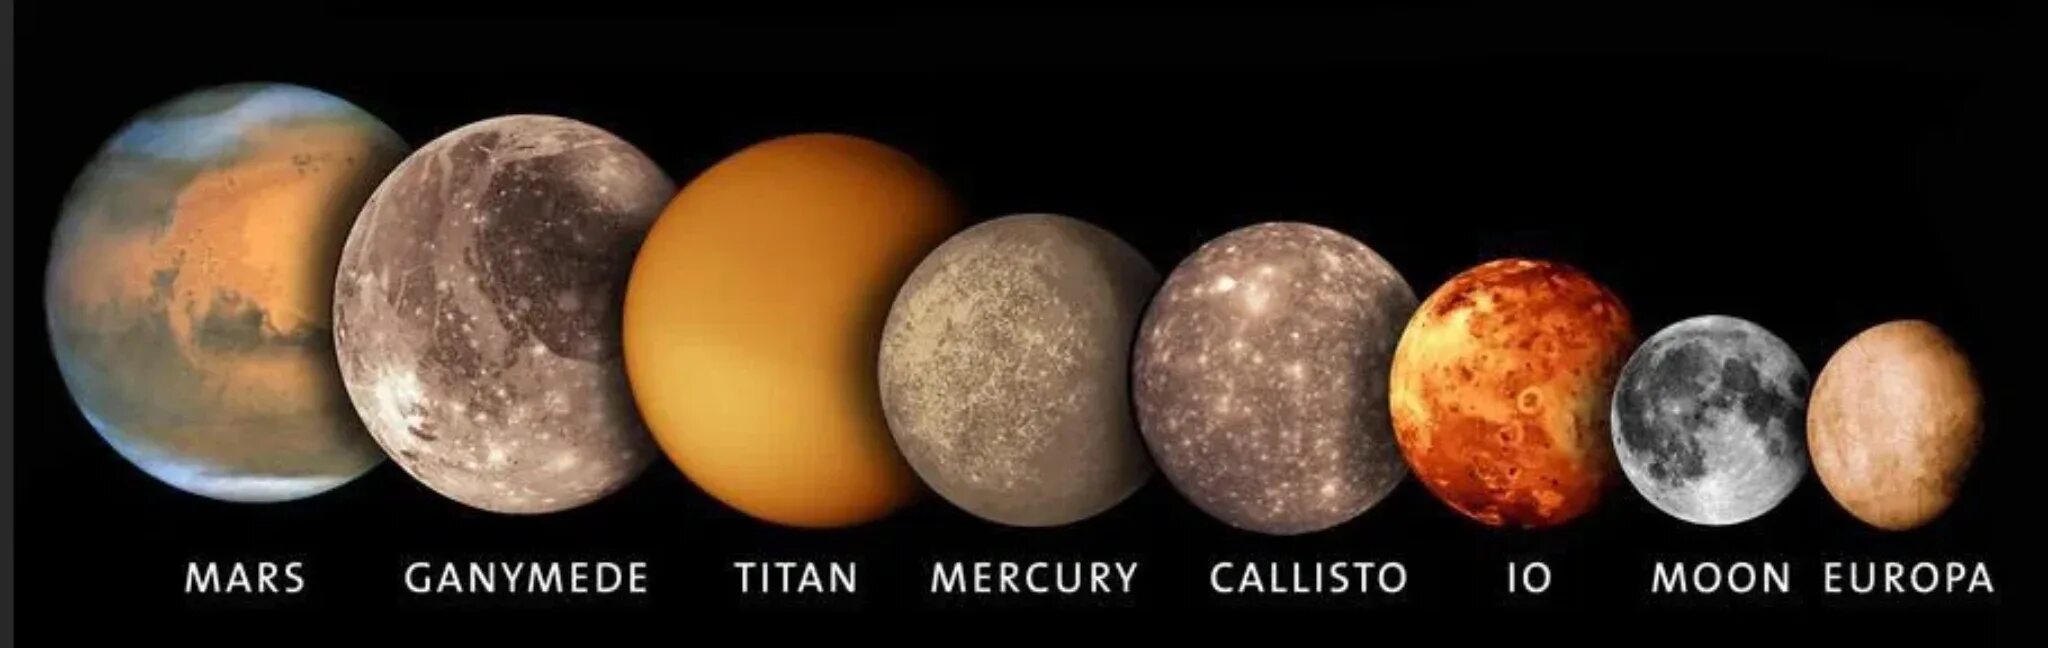 Меркурий Титан Ганимед. Ганимед Титан Тритон Луна Меркурий Плутон. Меркурий Планета сравнение размеров. Титан и Меркурий Размеры.